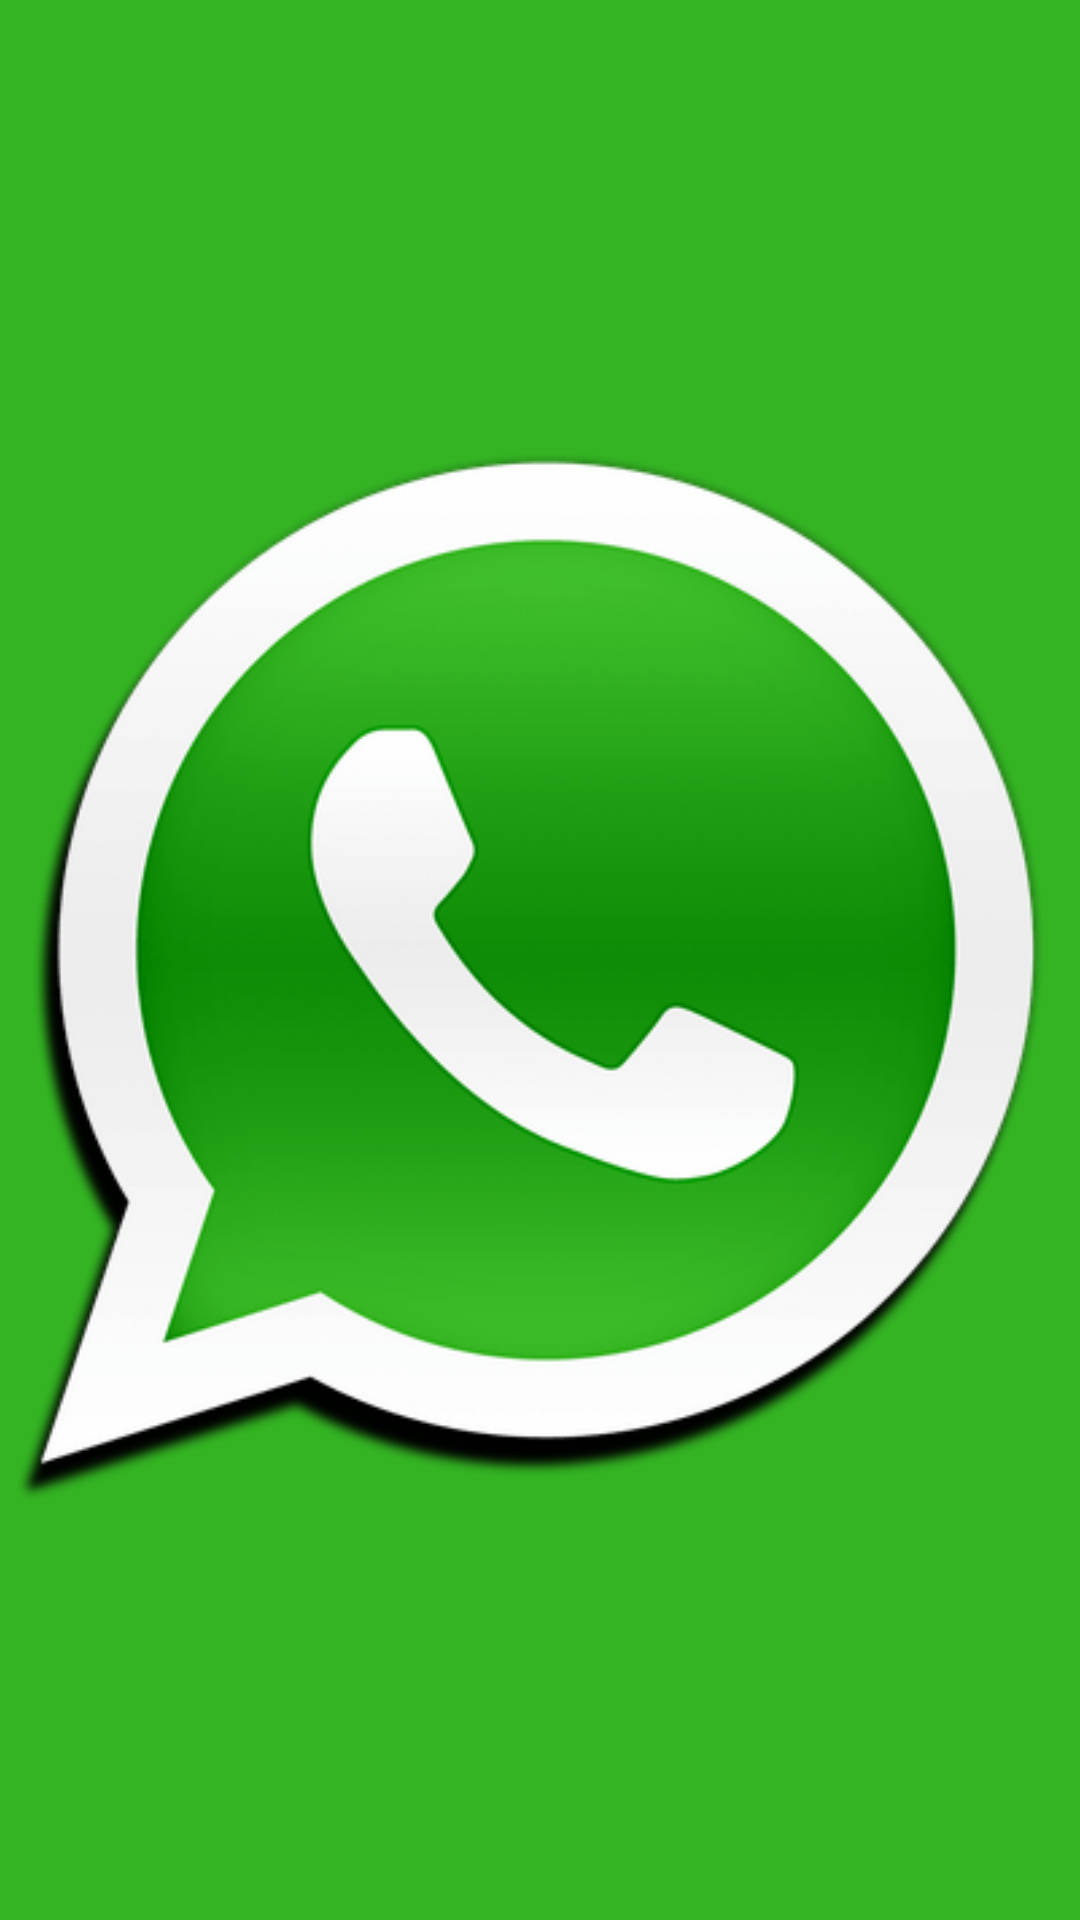 Whatsapp Logo In Green Wallpaper